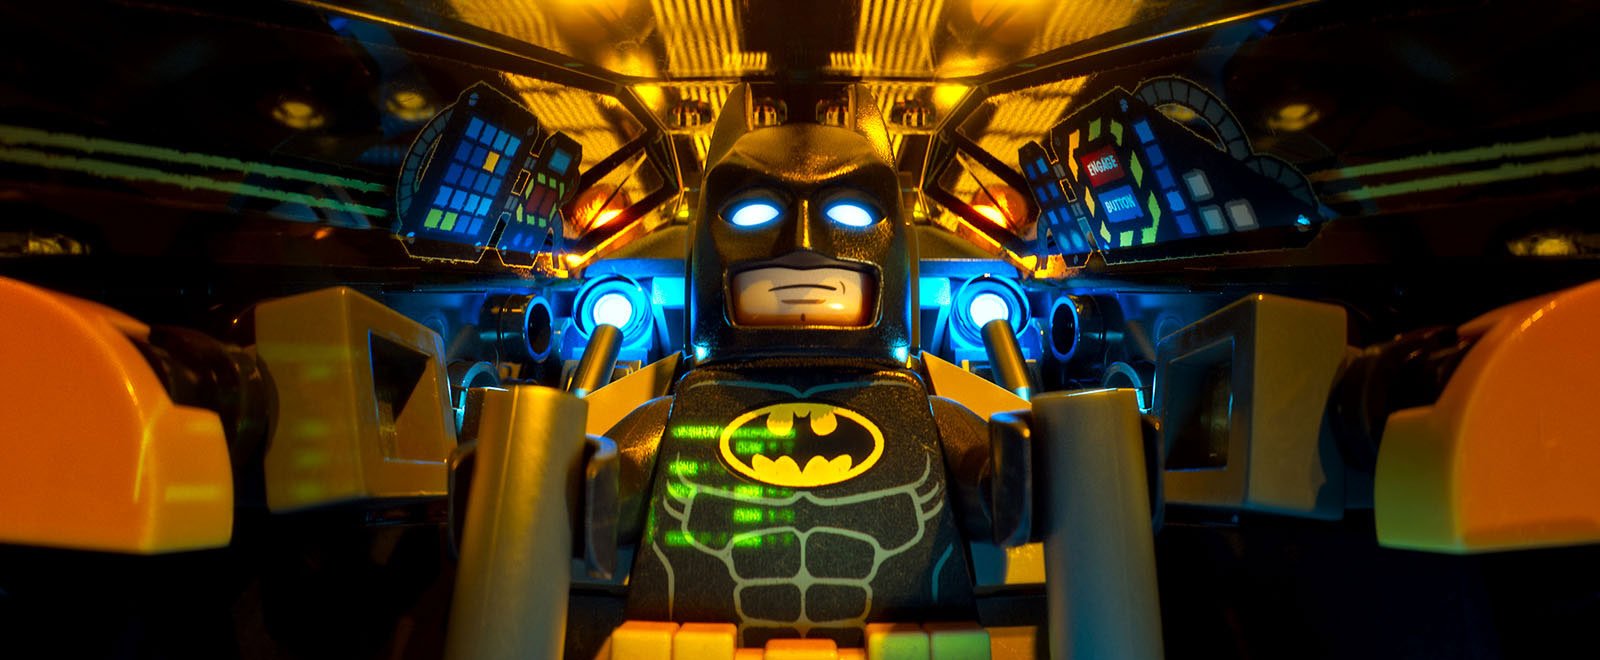 The LEGO Batman Movie / Lego Фільм: Бетмен